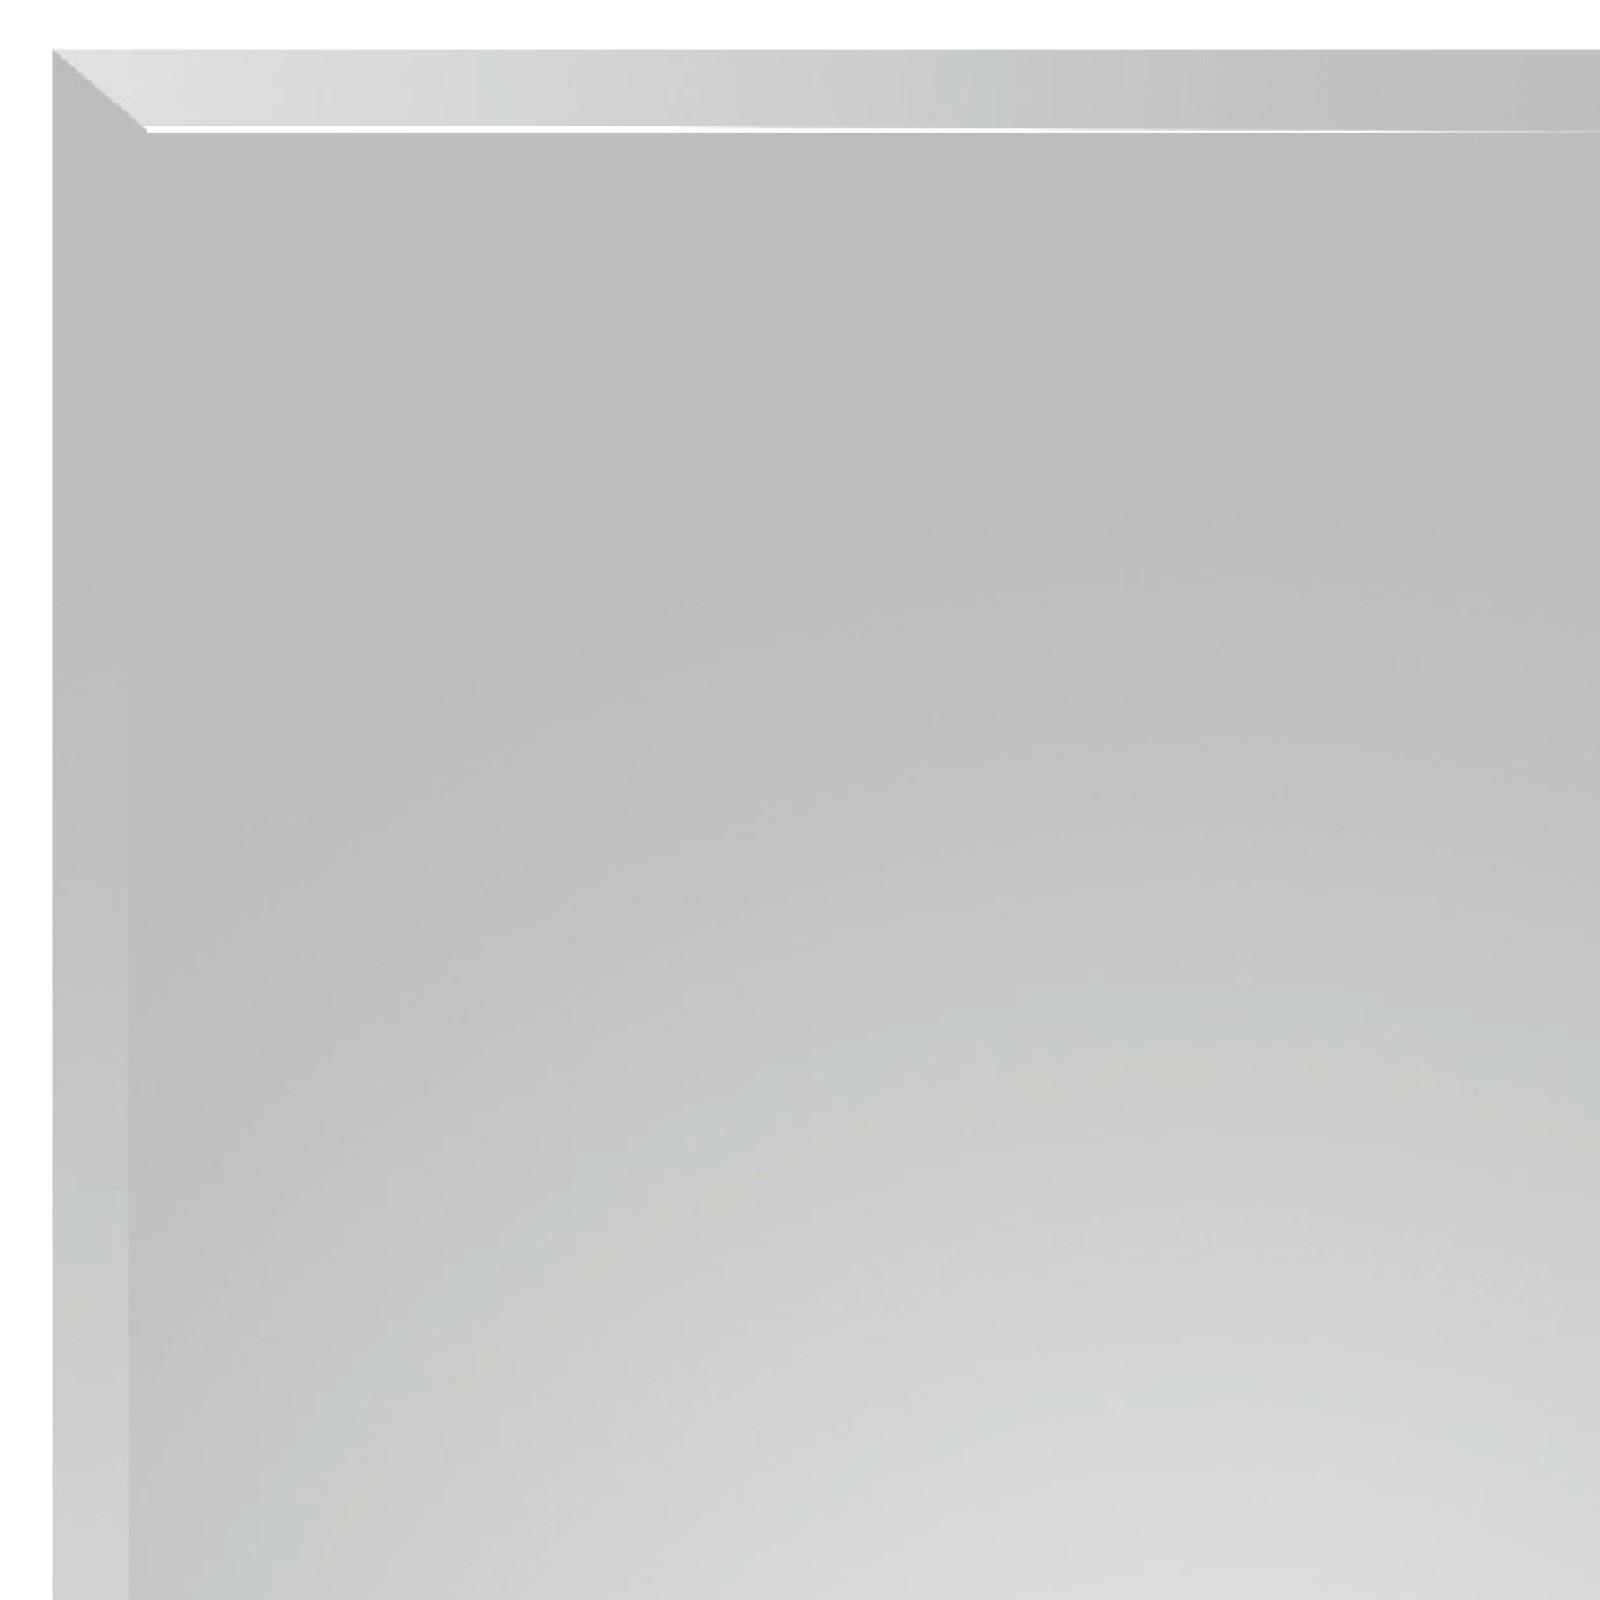 Wandspiegel Nina Rechteckig 45x60 cm ohne Rahmen - MODERN, Glas (45/60/0,5cm)